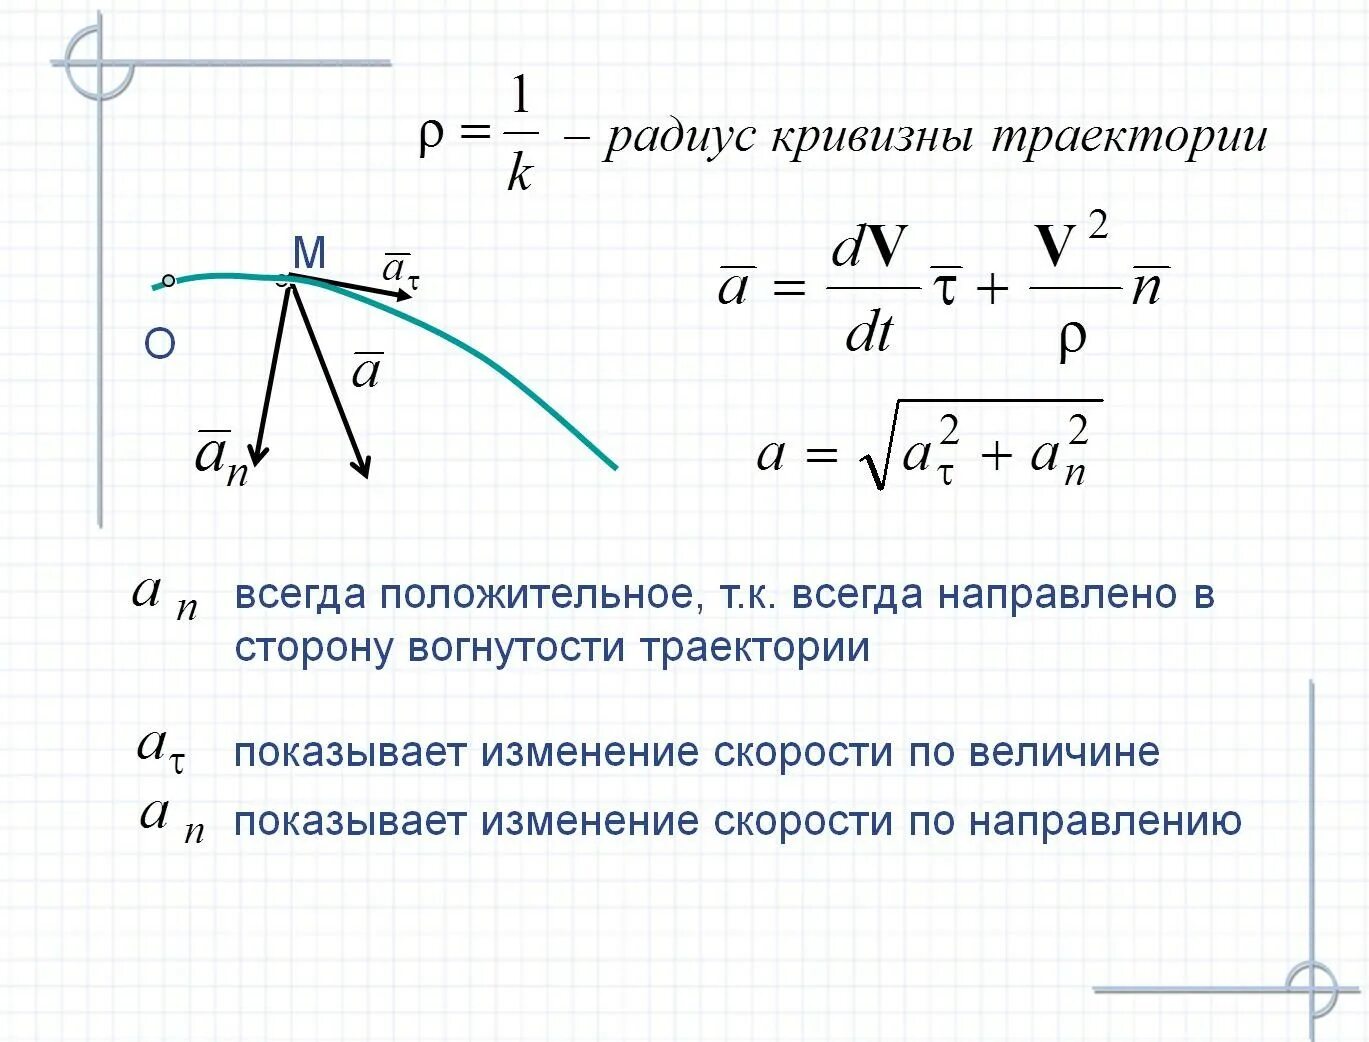 Радиус кривизны движения формула. Радиус кривизны через ускорение. Радиус кривизны траектории формула. Кривизна и радиус кривизны траектории. Работа всегда положительна